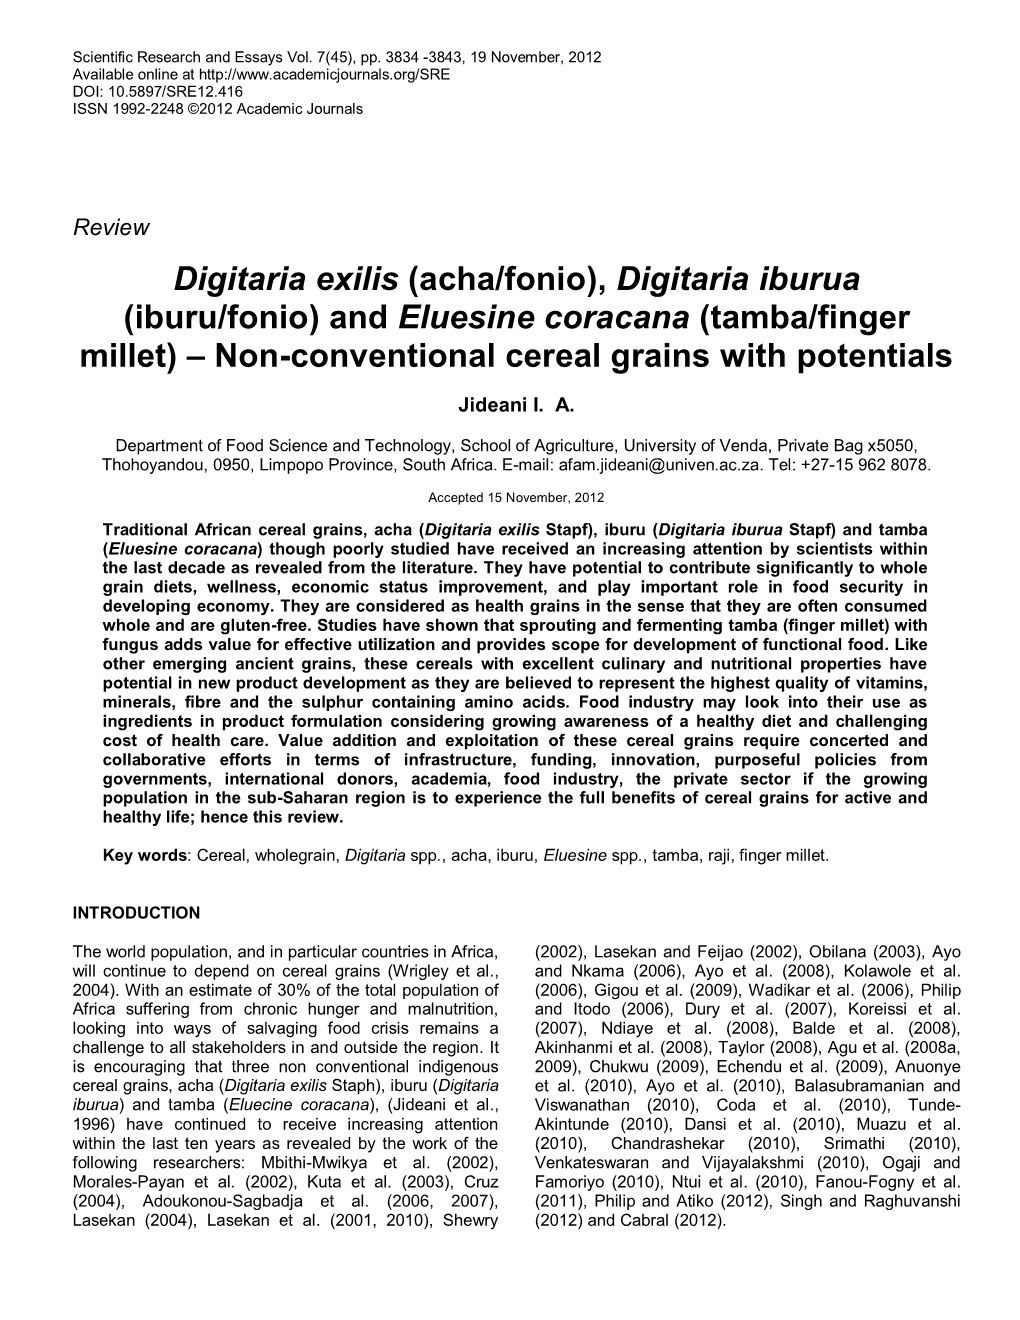 Acha/Fonio), Digitaria Iburua (Iburu/Fonio) and Eluesine Coracana (Tamba/Finger Millet) – Non-Conventional Cereal Grains with Potentials